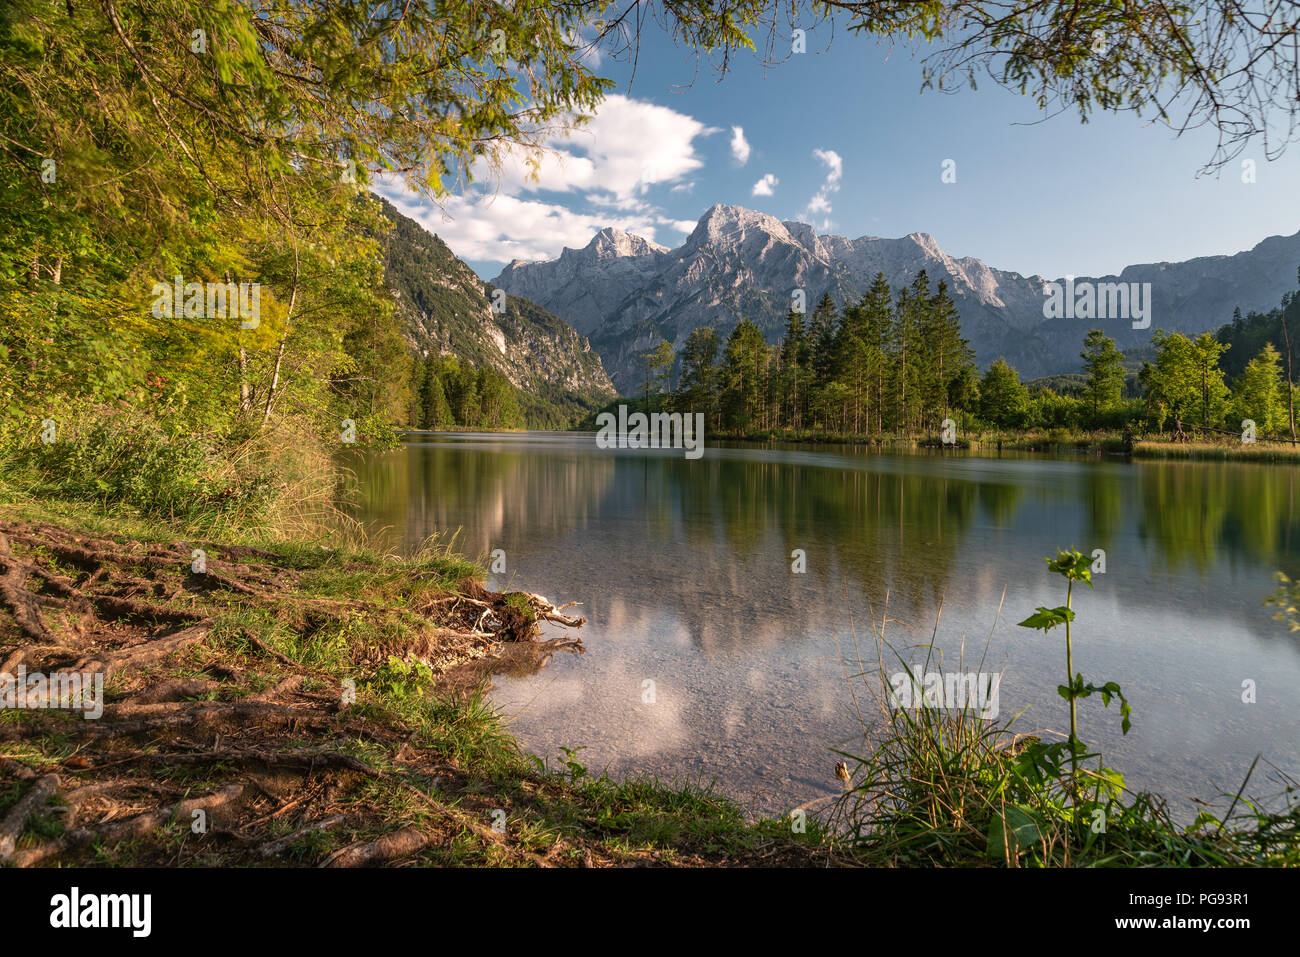 Bella Amlsee in Austria Superiore alla fine di una calda estate 2018. Acqua limpida e riflettendo le montagne sono la base per una perfetta natura fatta comp. Foto Stock